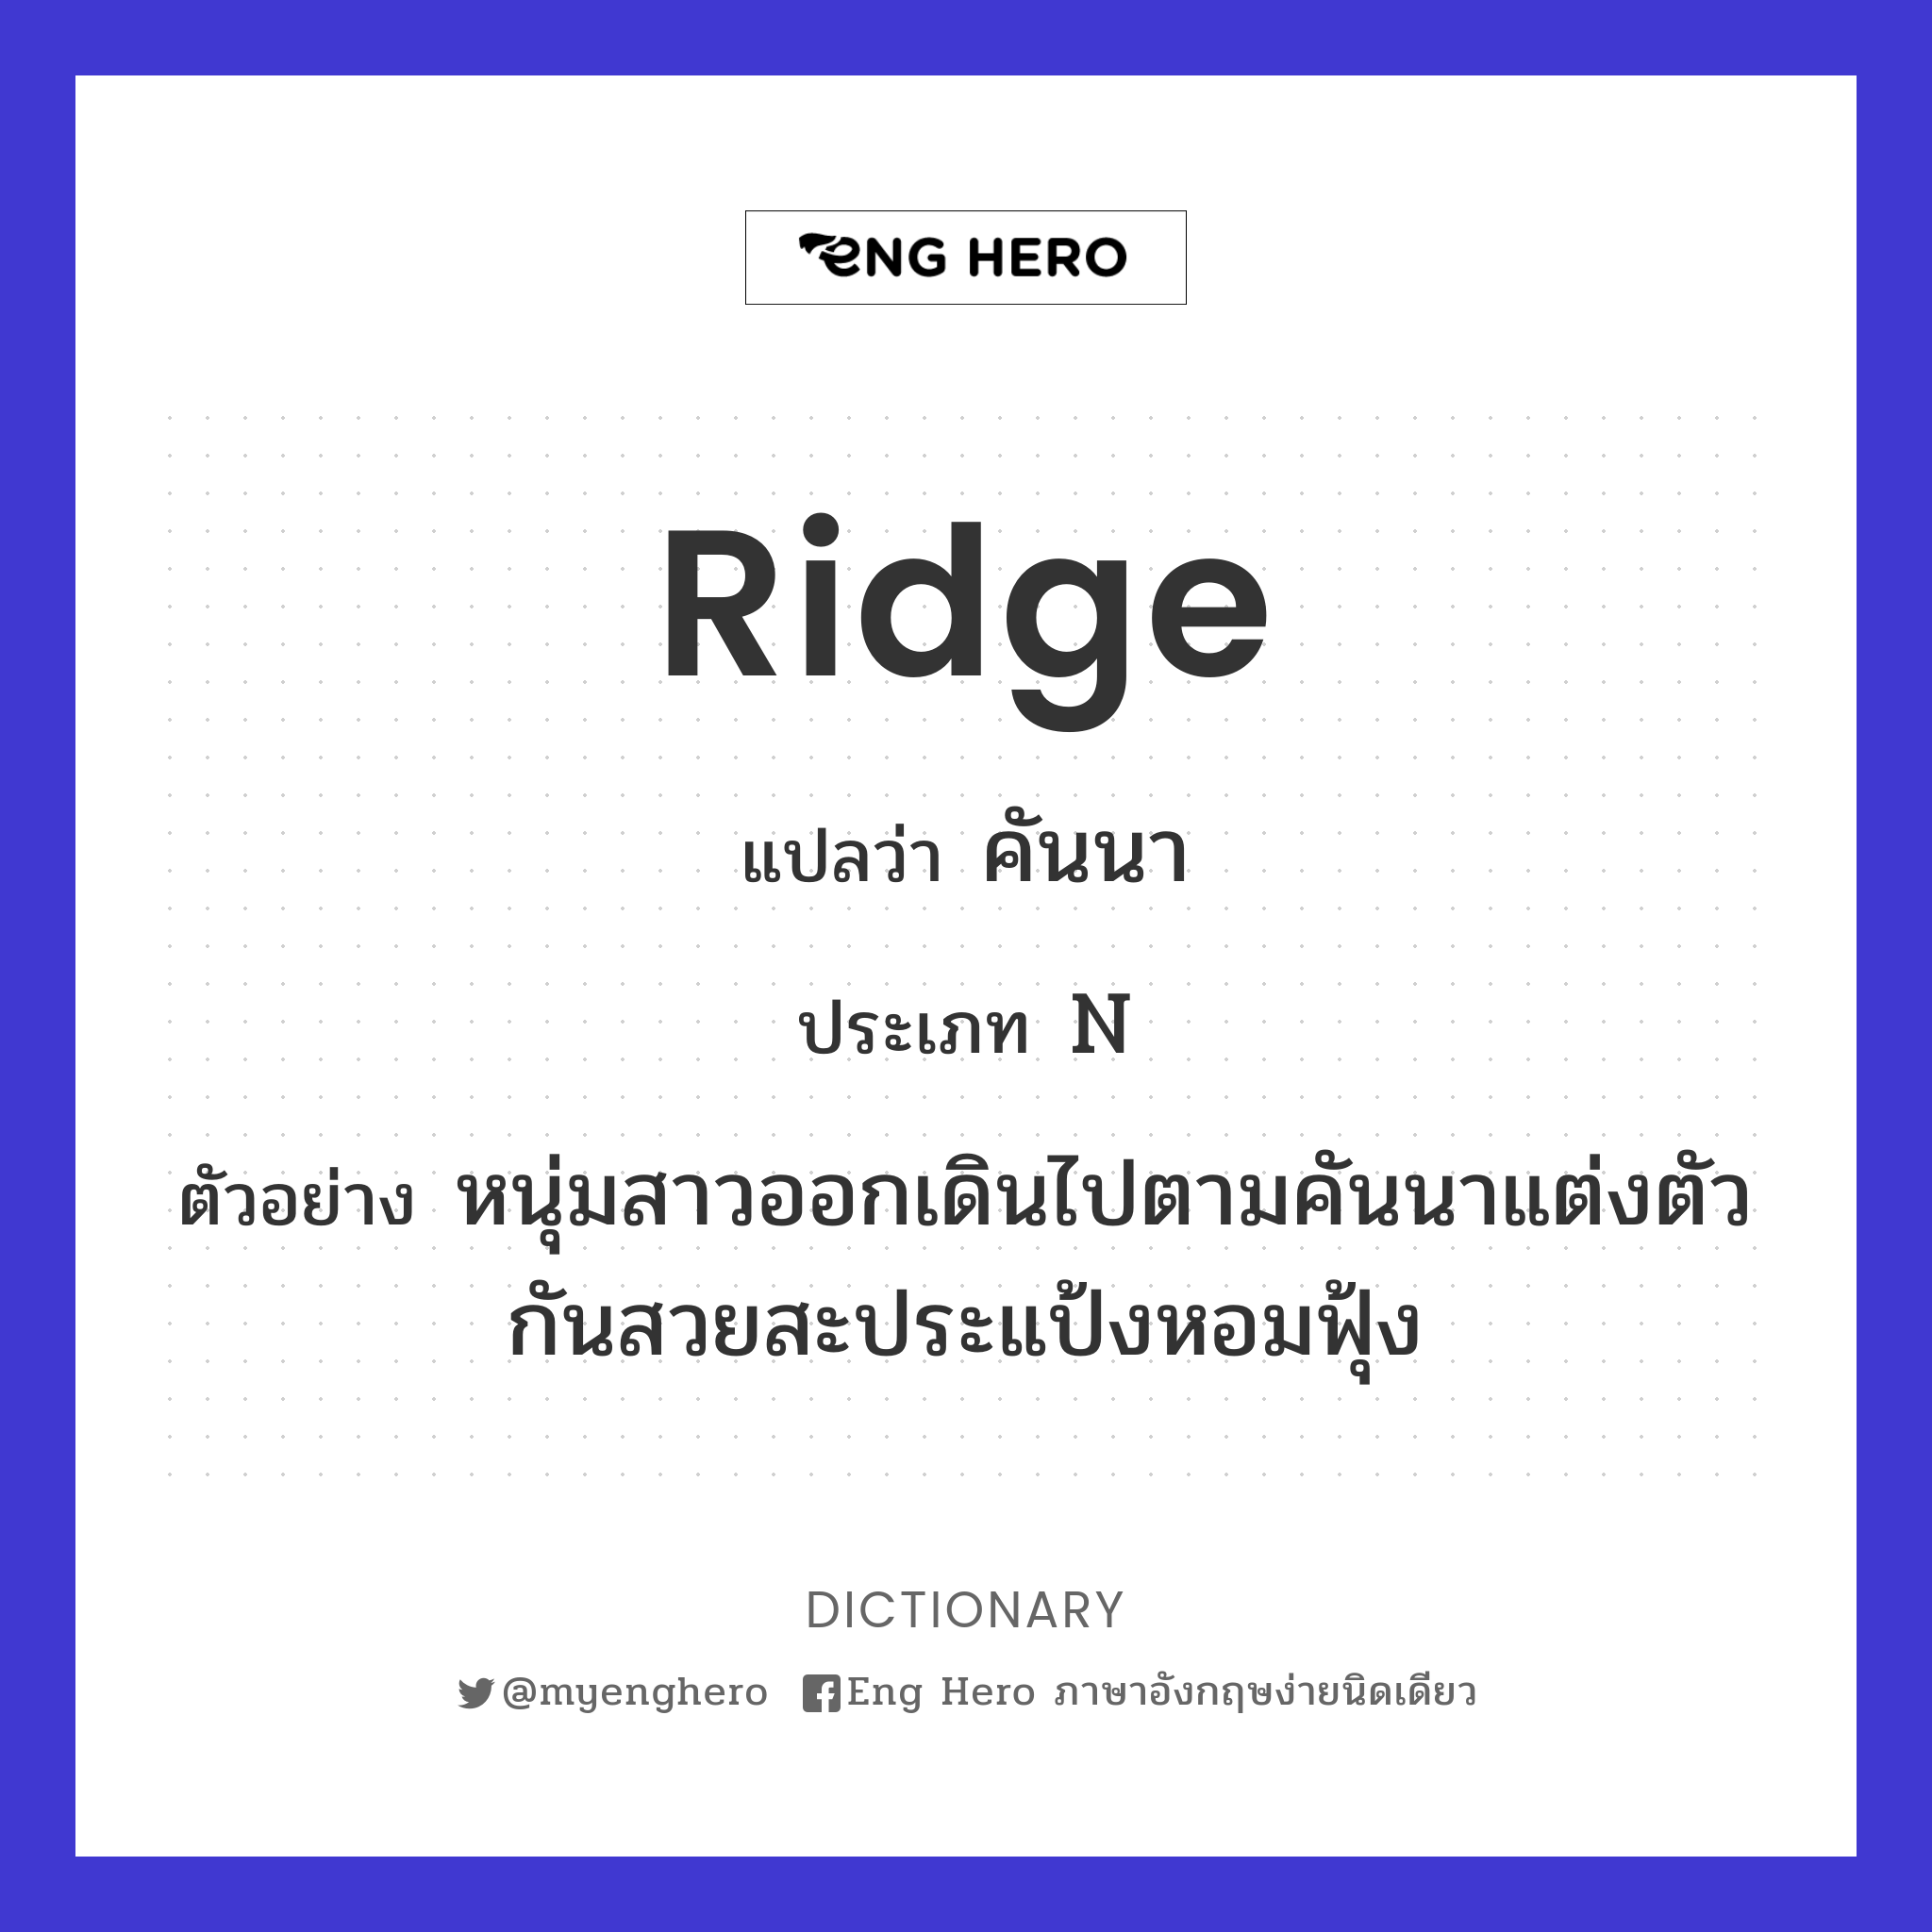 ridge